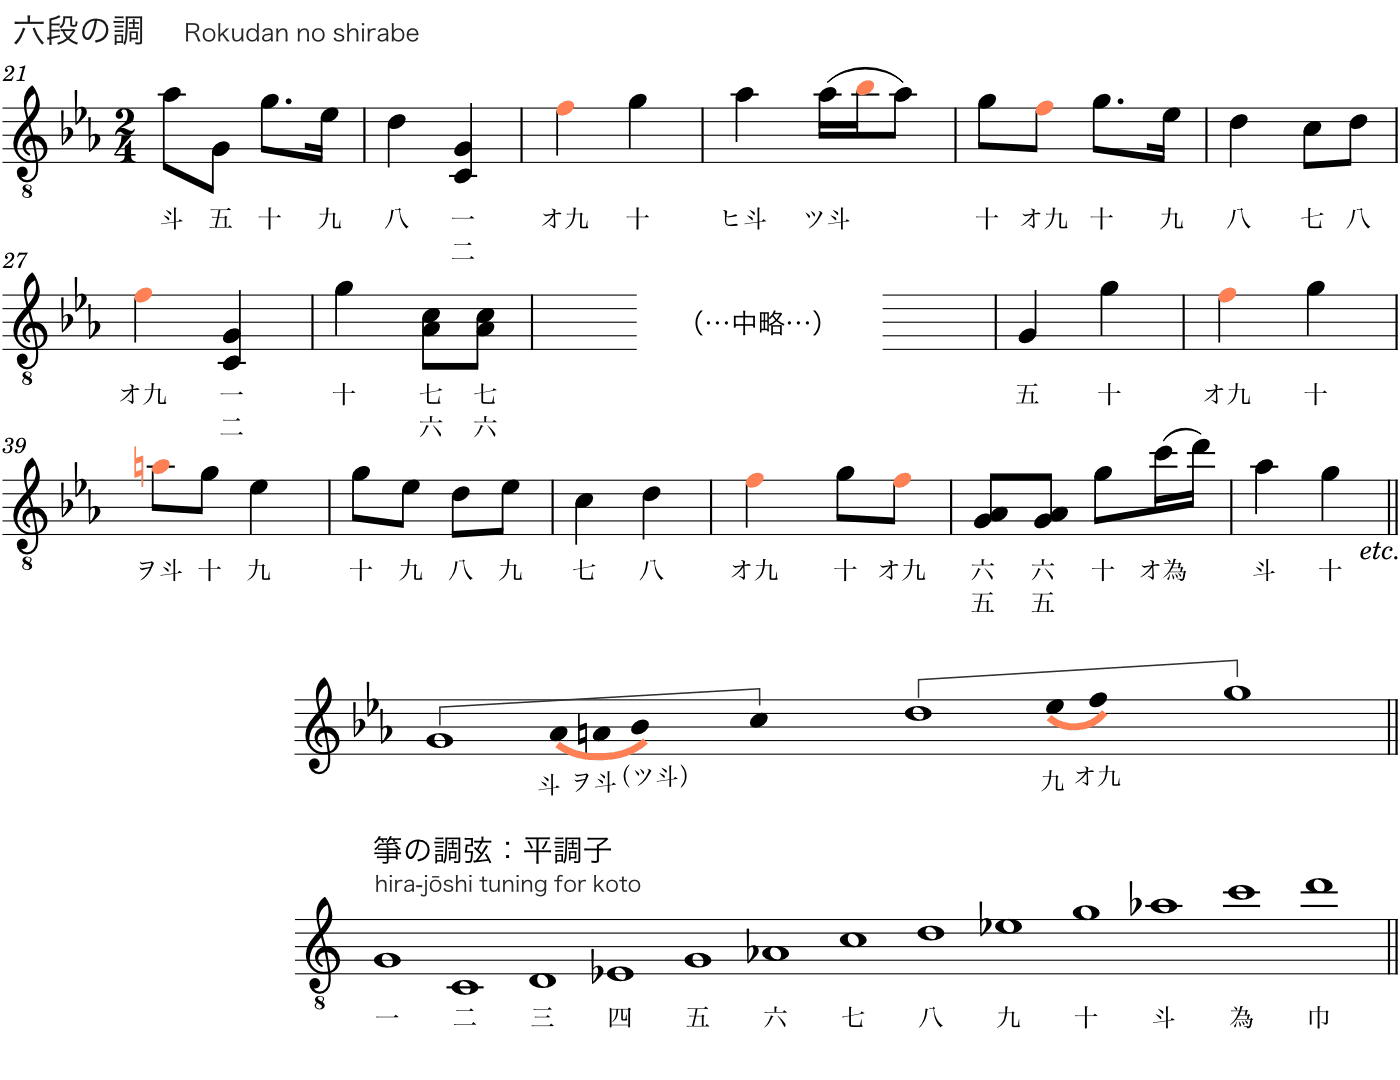 『六段の調』箏の調子と曲の音階との関係